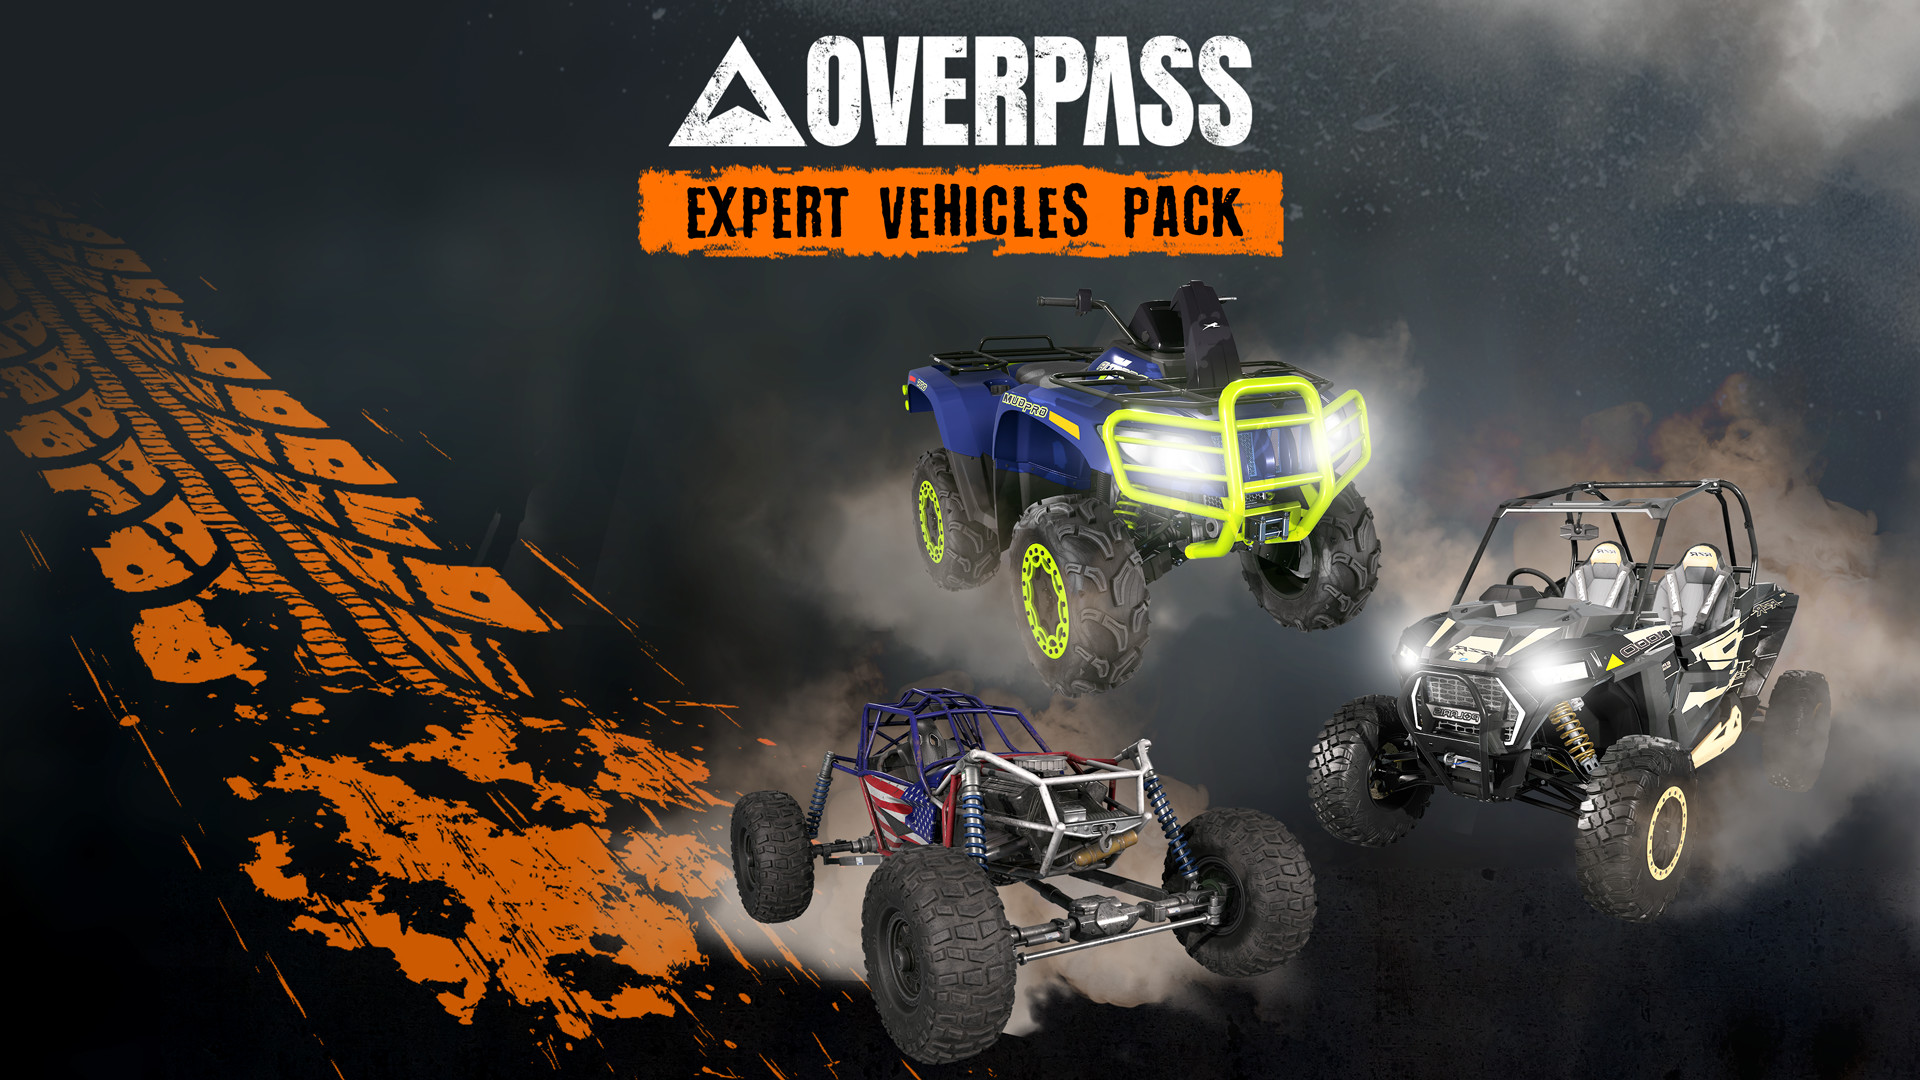 OVERPASS - Expert Vehicles Pack DLC Steam CD Key, $2.36